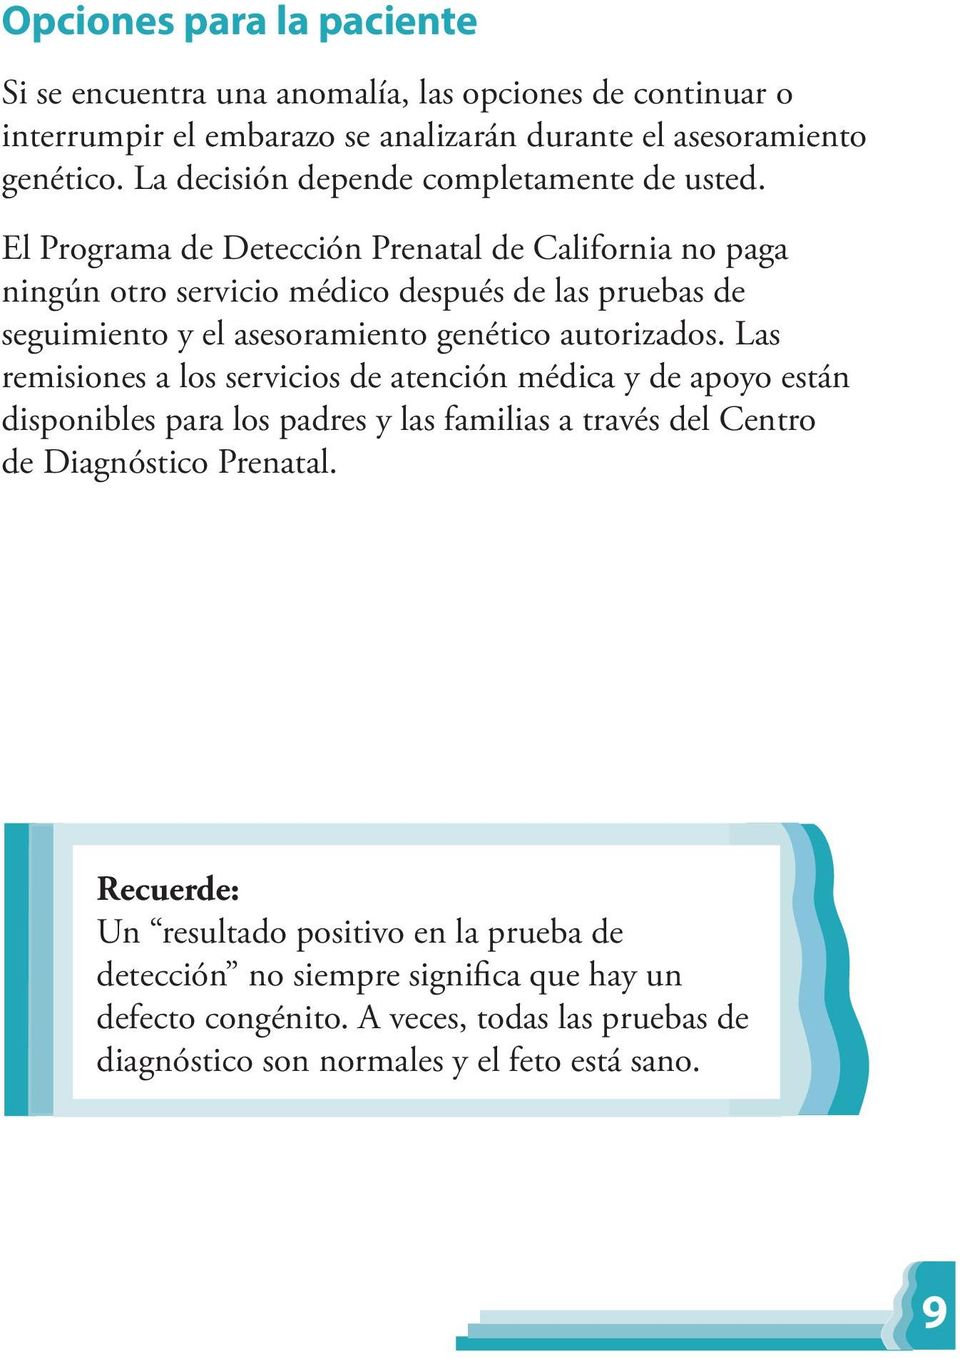 El Programa de Detección Prenatal de California no paga ningún otro servicio médico después de las pruebas de seguimiento y el asesoramiento genético autorizados.